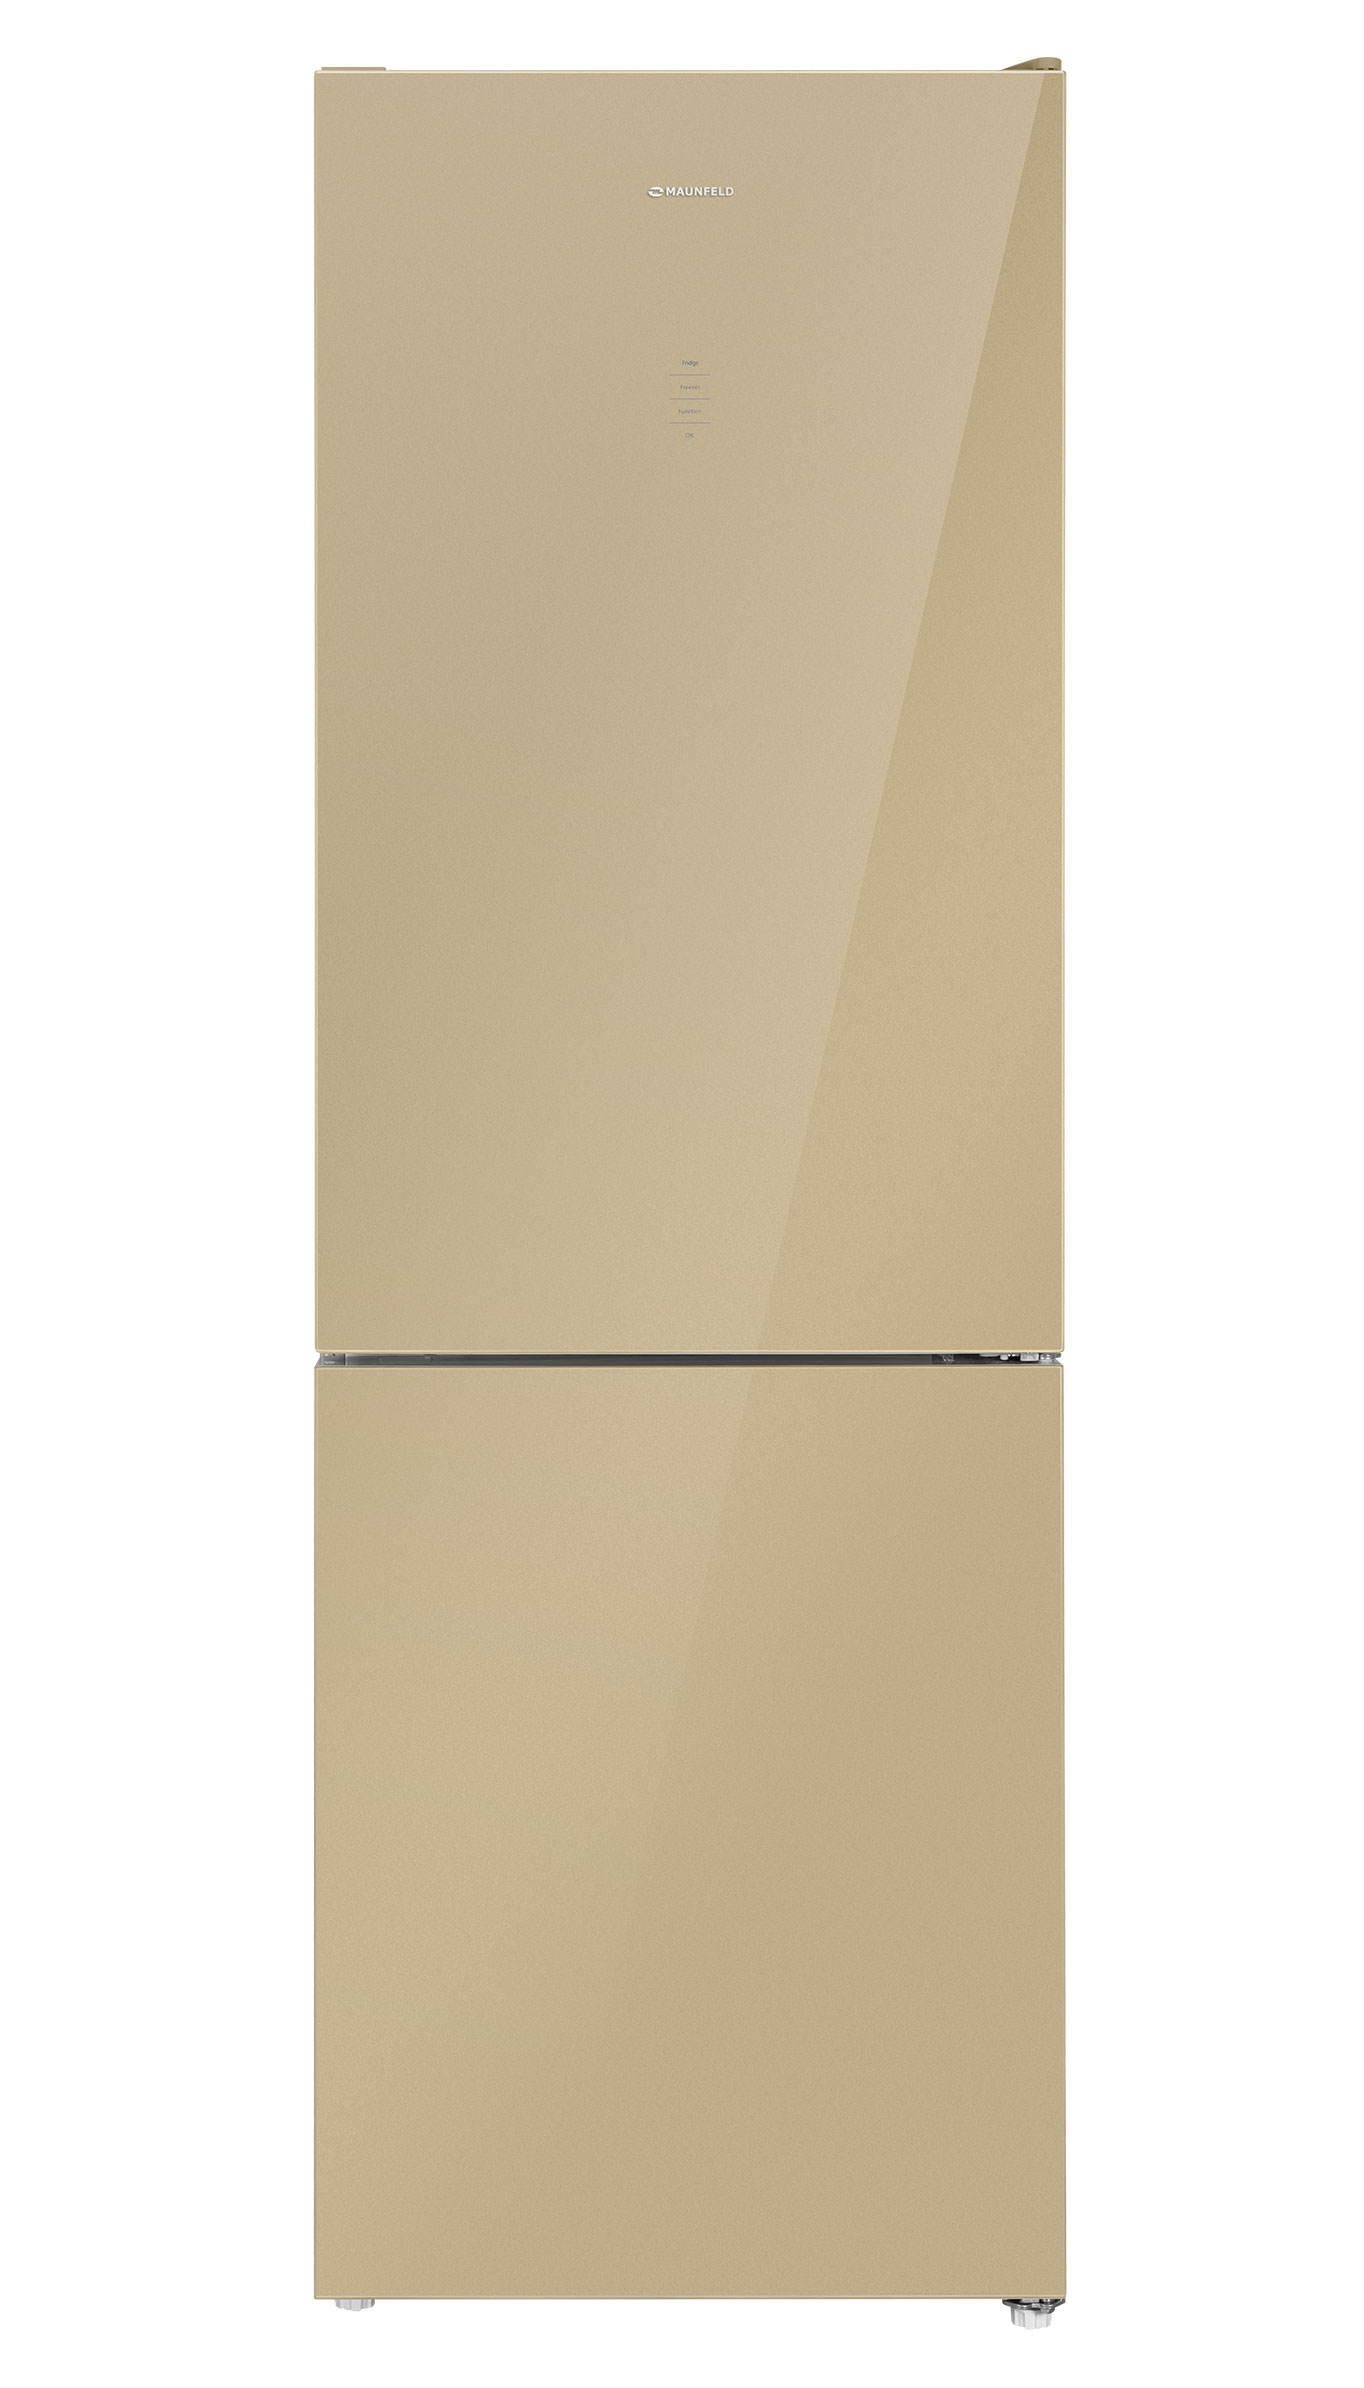 Двухкамерный холодильник MAUNFELD MFF185NFBG																		 — описание, фото, цены в интернет-магазине Премьер Техно